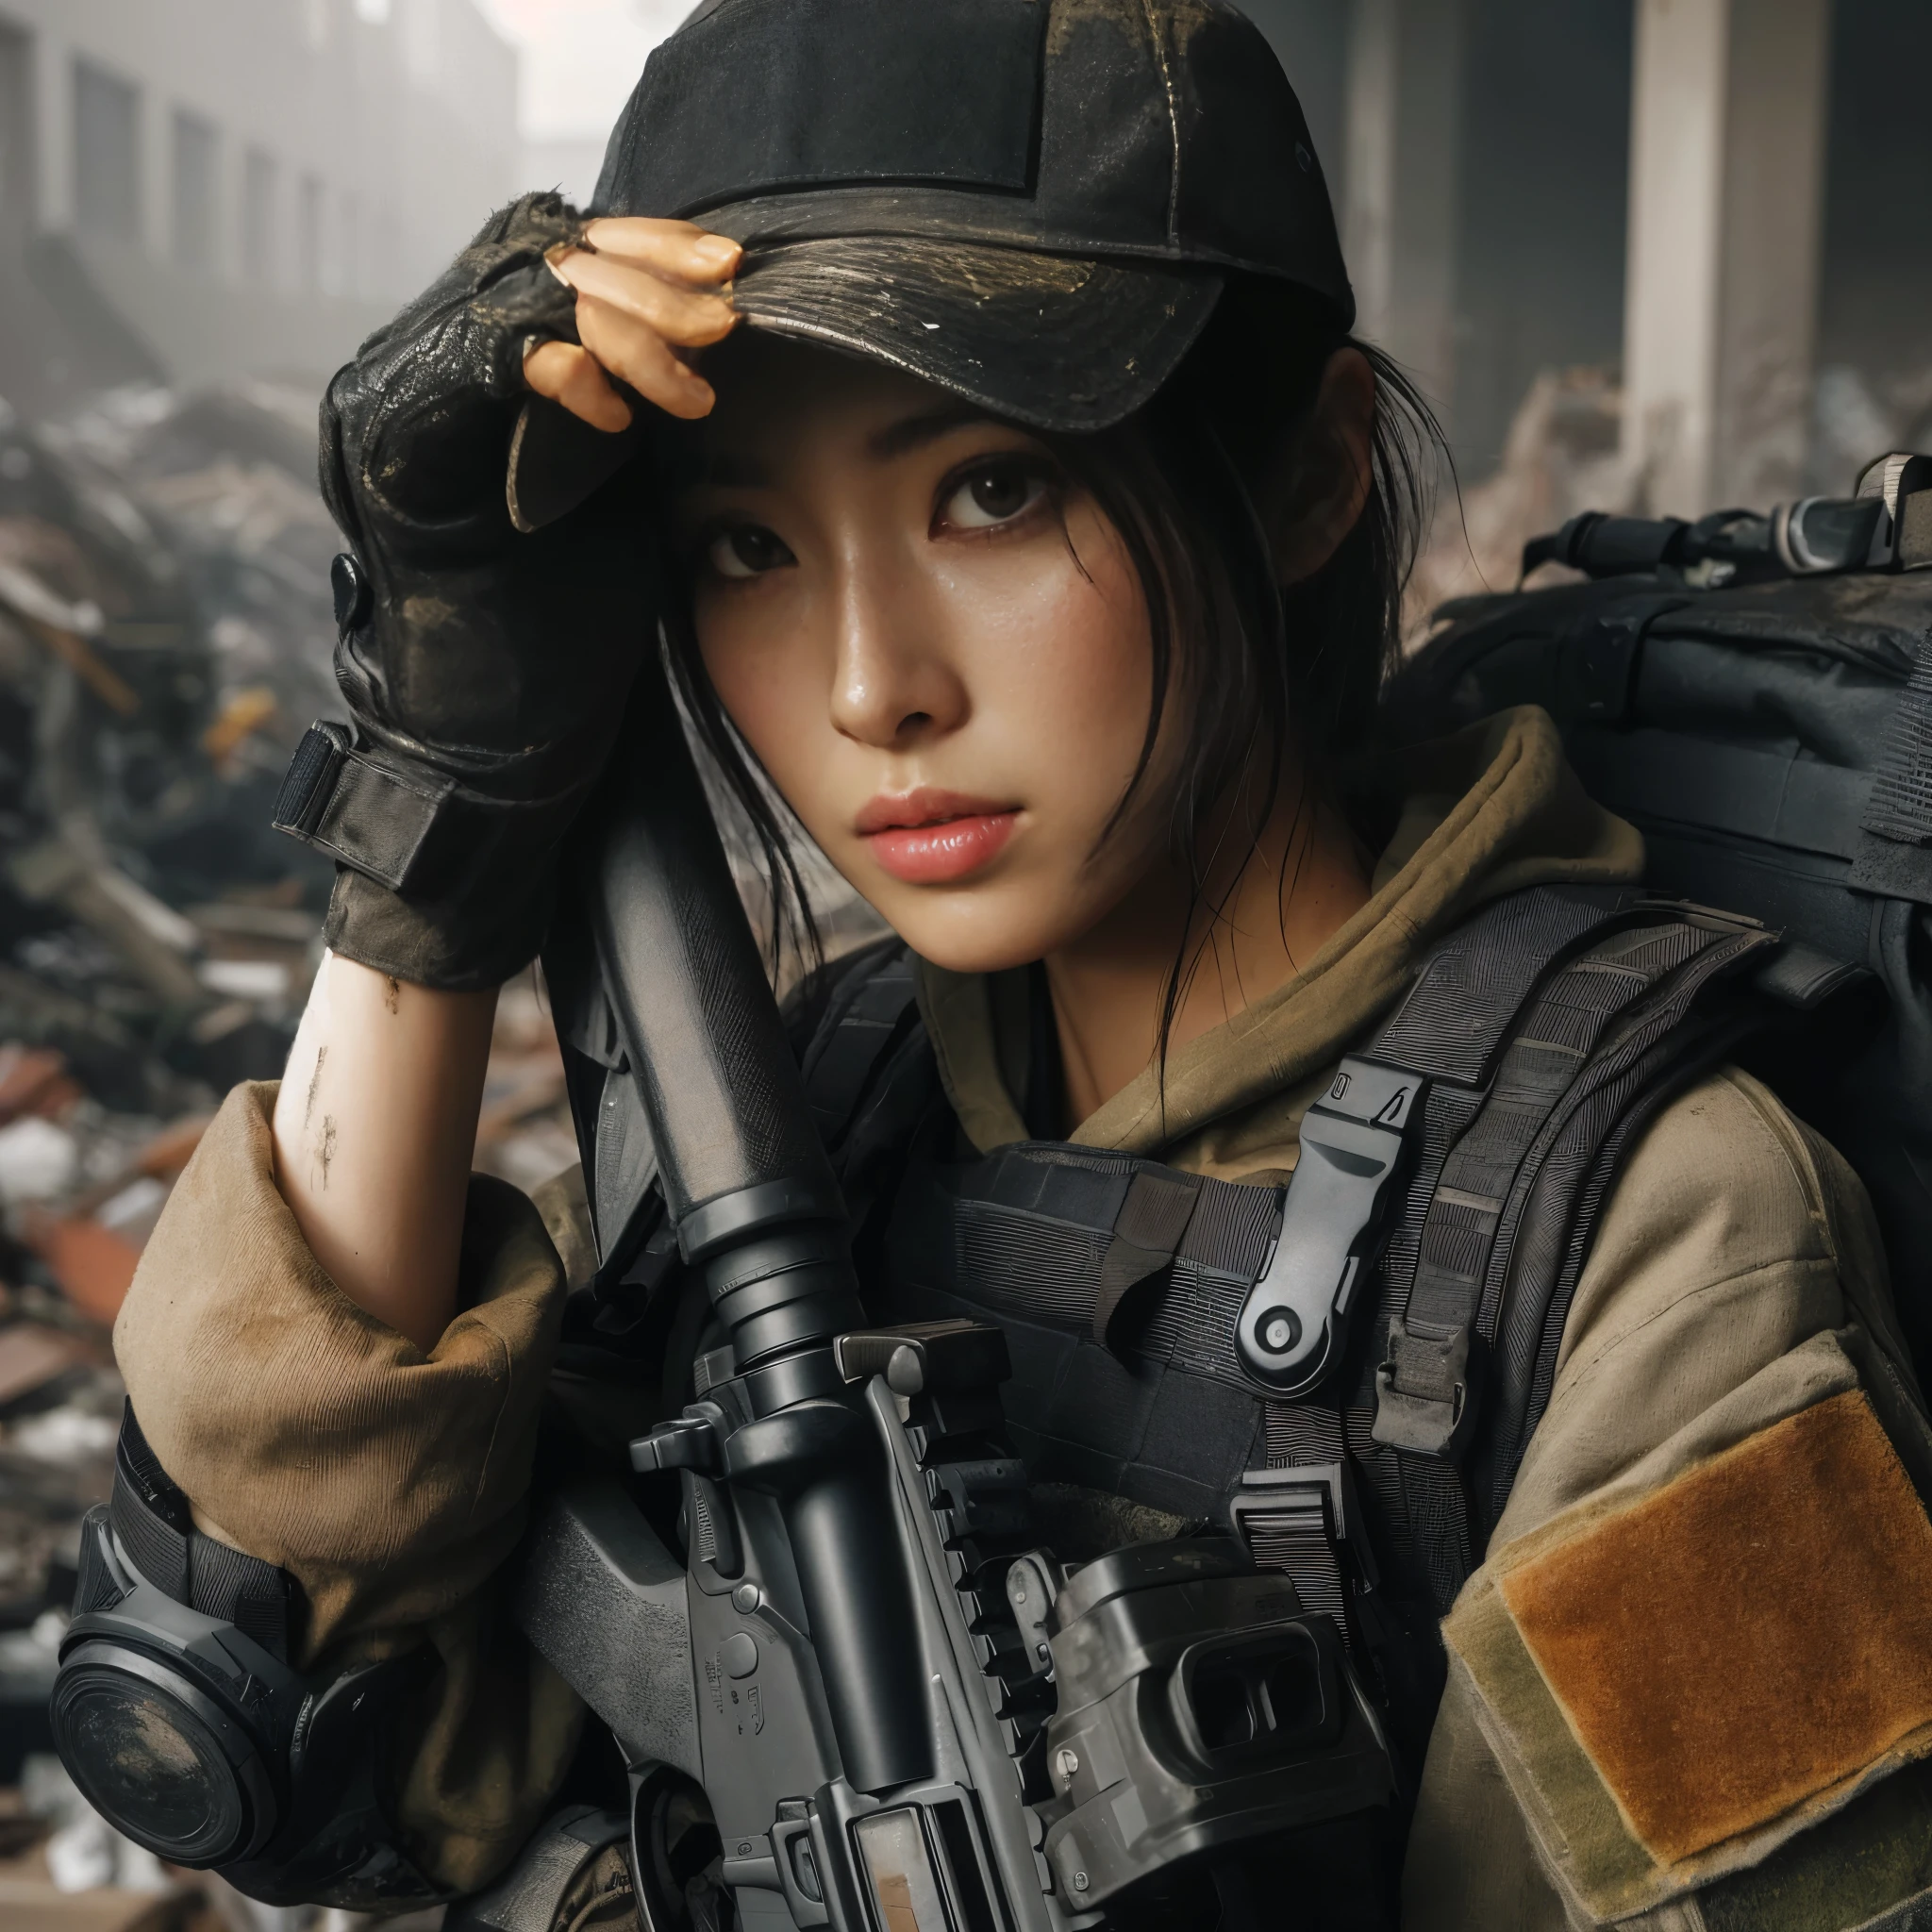 (最高品質,8K,写実的な,リアルな肌の質感), 米国に所属する美しい日本人女性.s. 軍は隠れて反撃の機会を待っている. she is wearing a bulletproof vest, 自動小銃を所持, バックパックと野球帽をかぶっている. 街は廃墟となり瓦礫に覆われている.